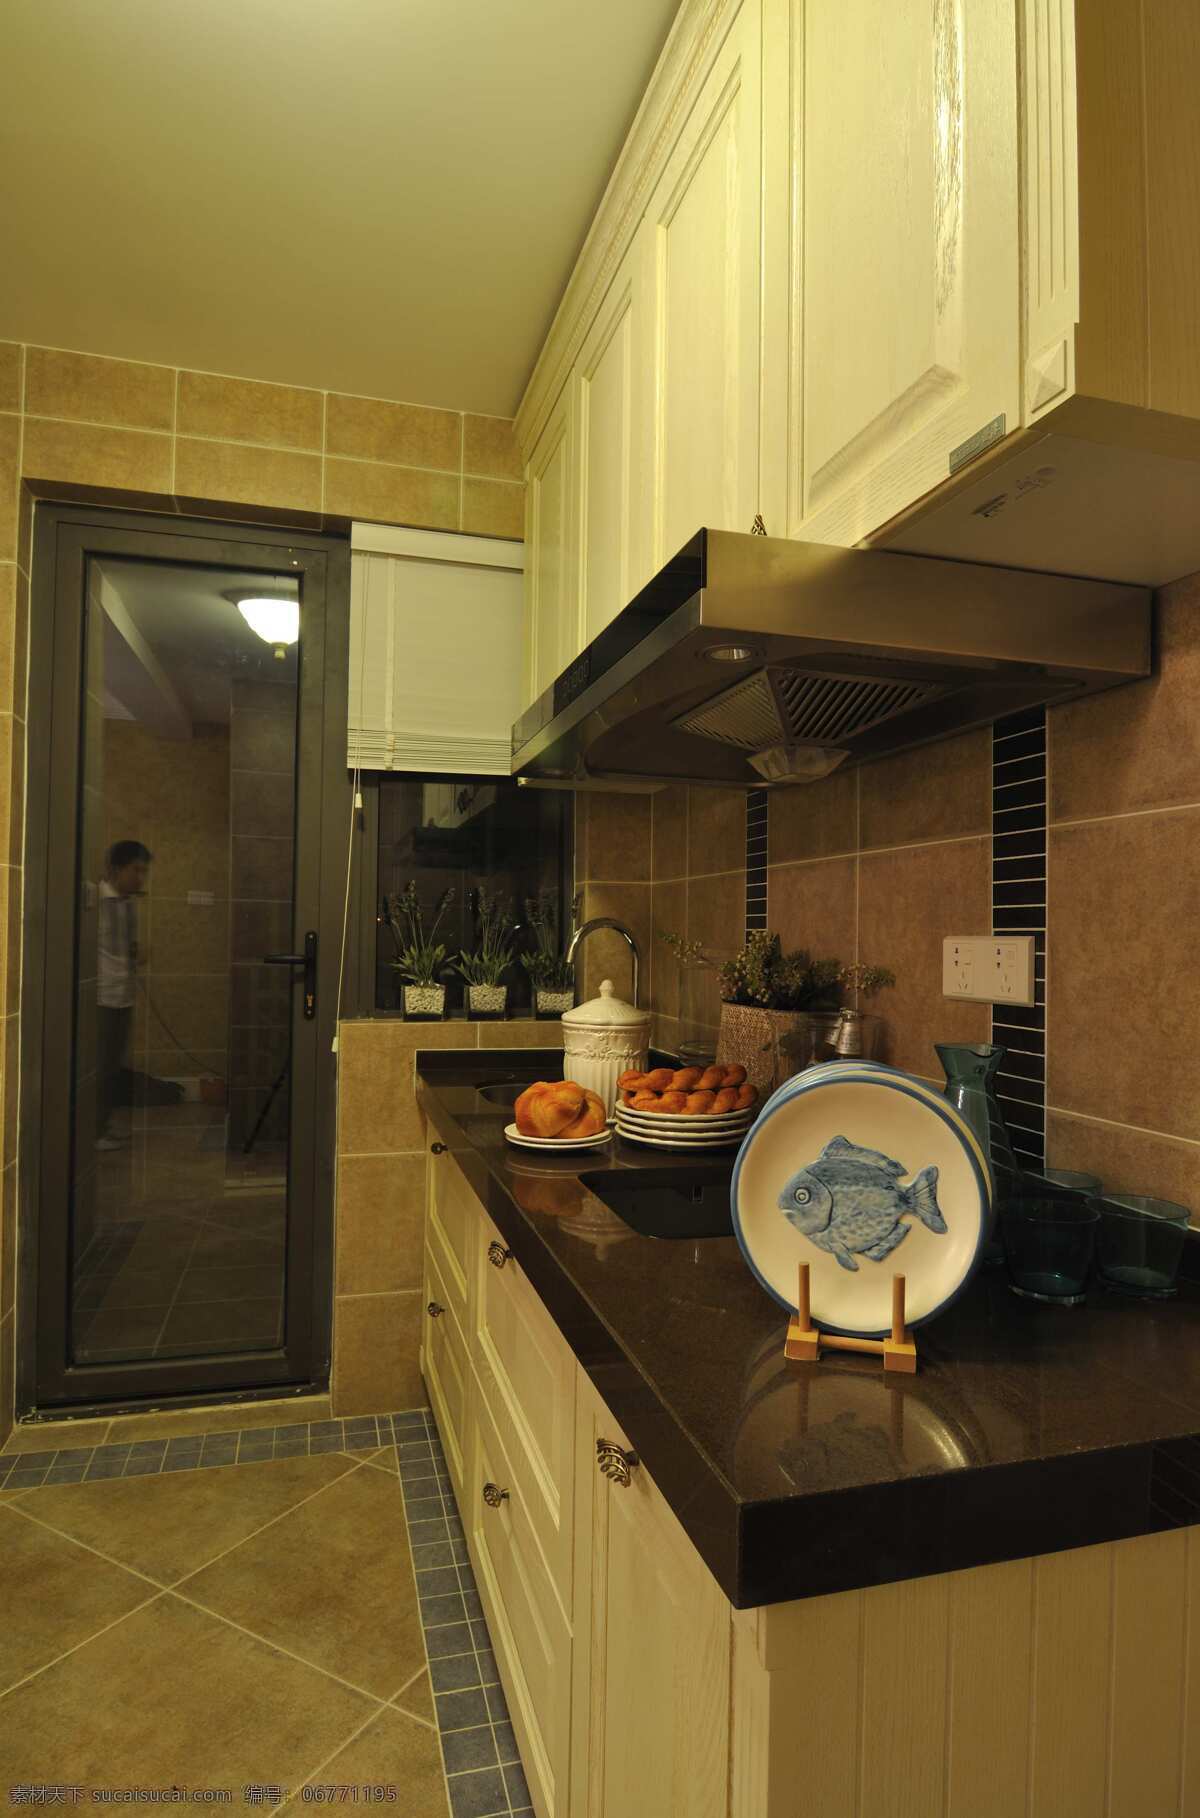 田园 风格 厨房 玻璃门 隔断 室内装修 效果图 柜子 厨房装修 大理石桌面 瓷砖地板